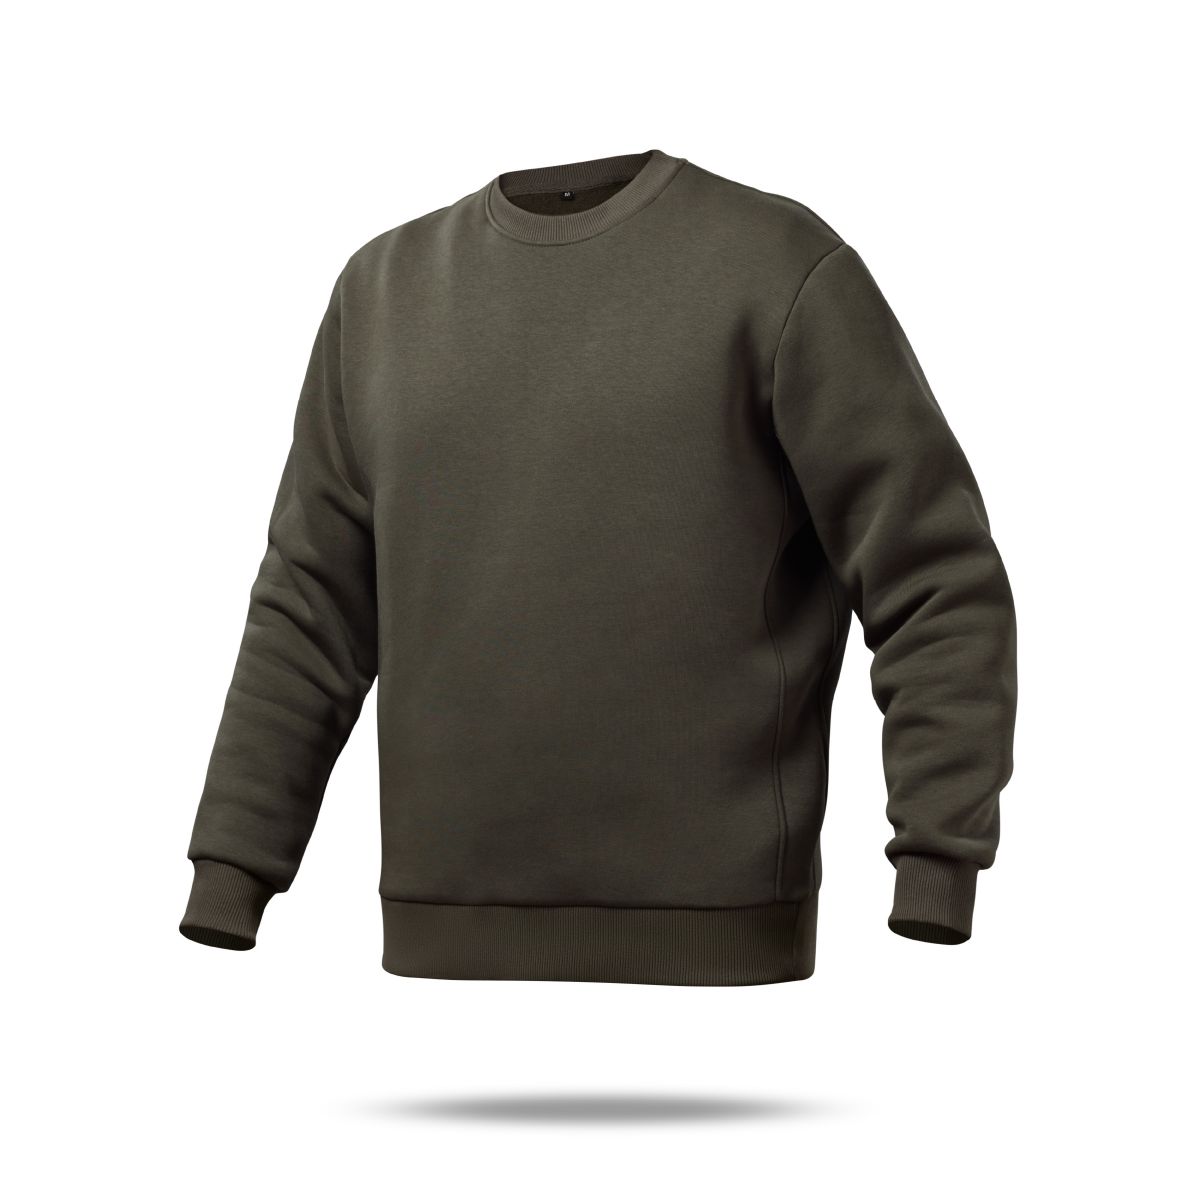 Свитшот Base Soft Sweatshirt. Свободный стиль. Цвет Олива/Olive. Размер S